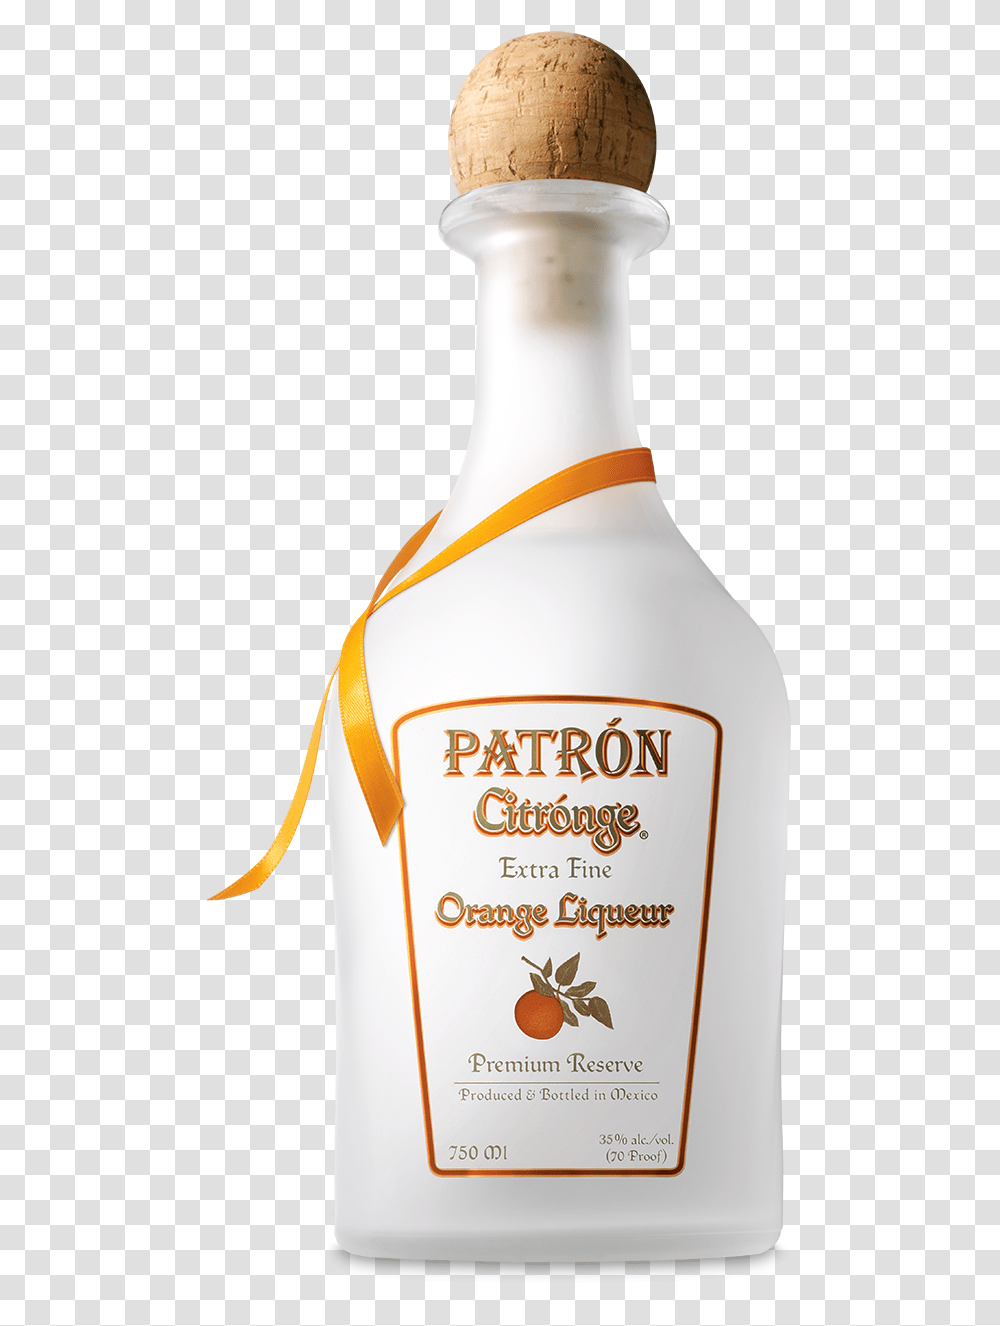 Patron Citronge, Label, Bottle, Alcohol Transparent Png